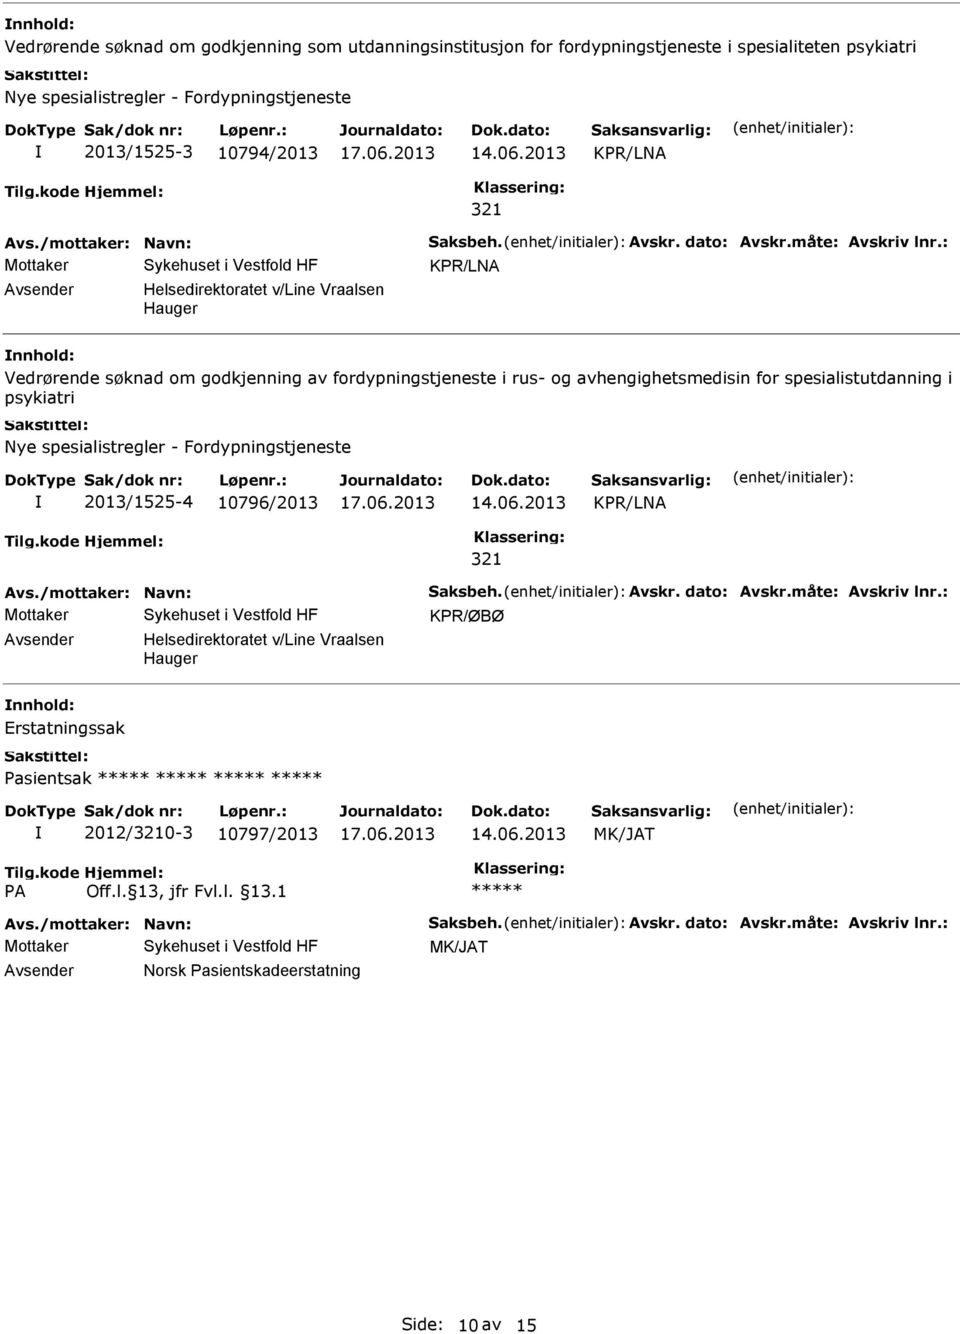 : KPR/LNA Helsedirektoratet v/line Vraalsen Hauger Vedrørende søknad om godkjenning av fordypningstjeneste i rus- og avhengighetsmedisin for spesialistutdanning i psykiatri Nye spesialistregler -